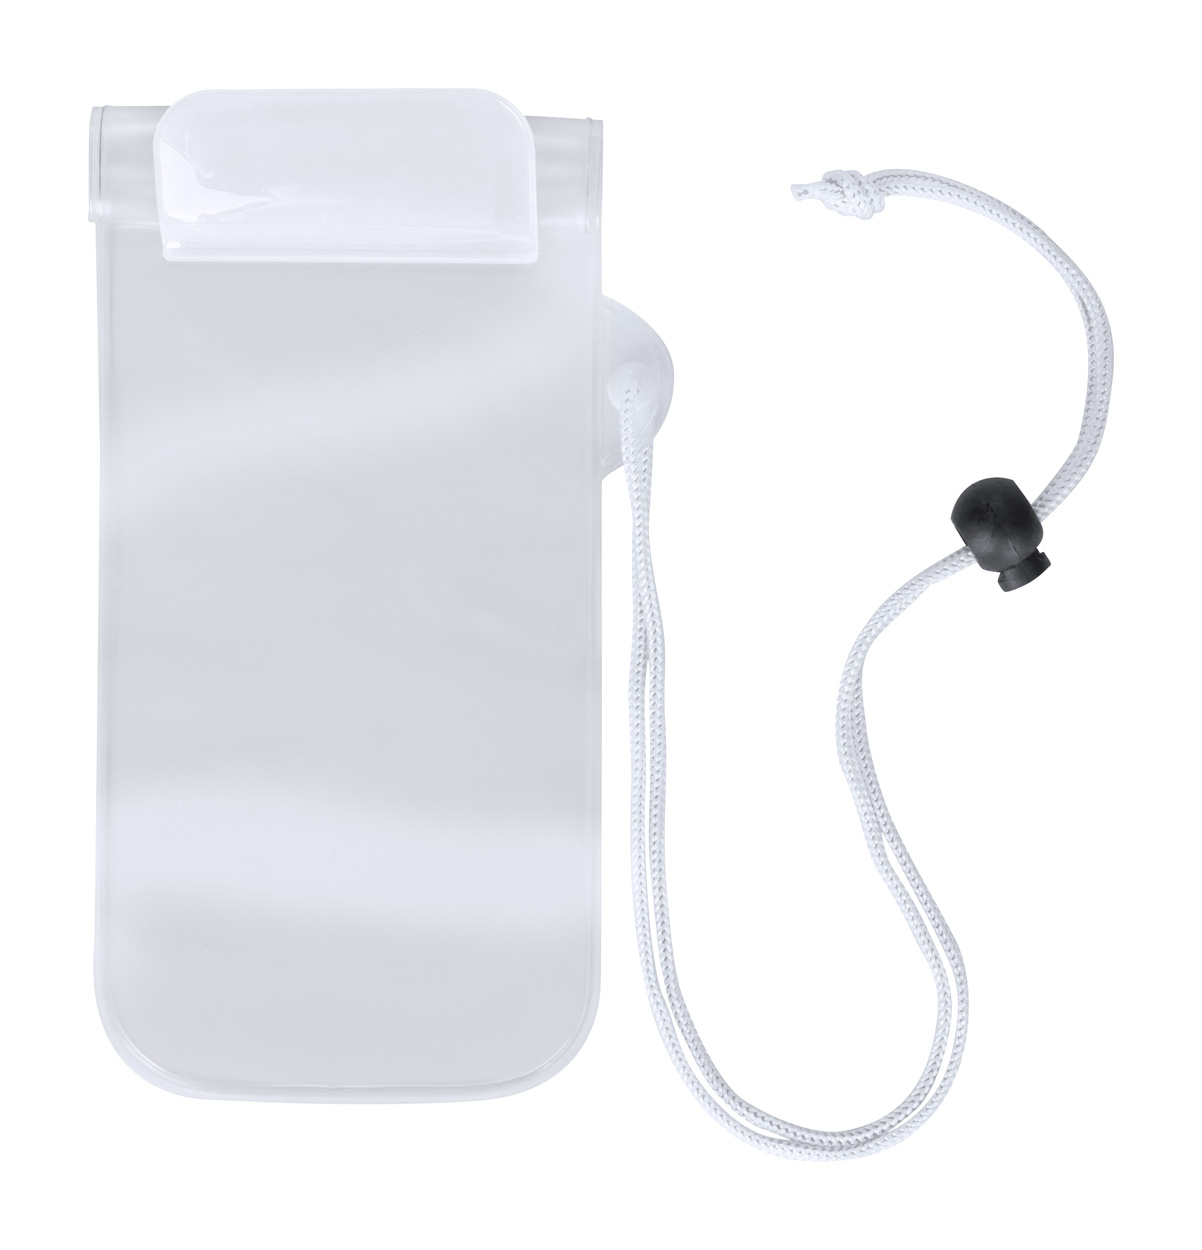 Promo  Waterpro vodootporna torbica za mobitel, bijele boje